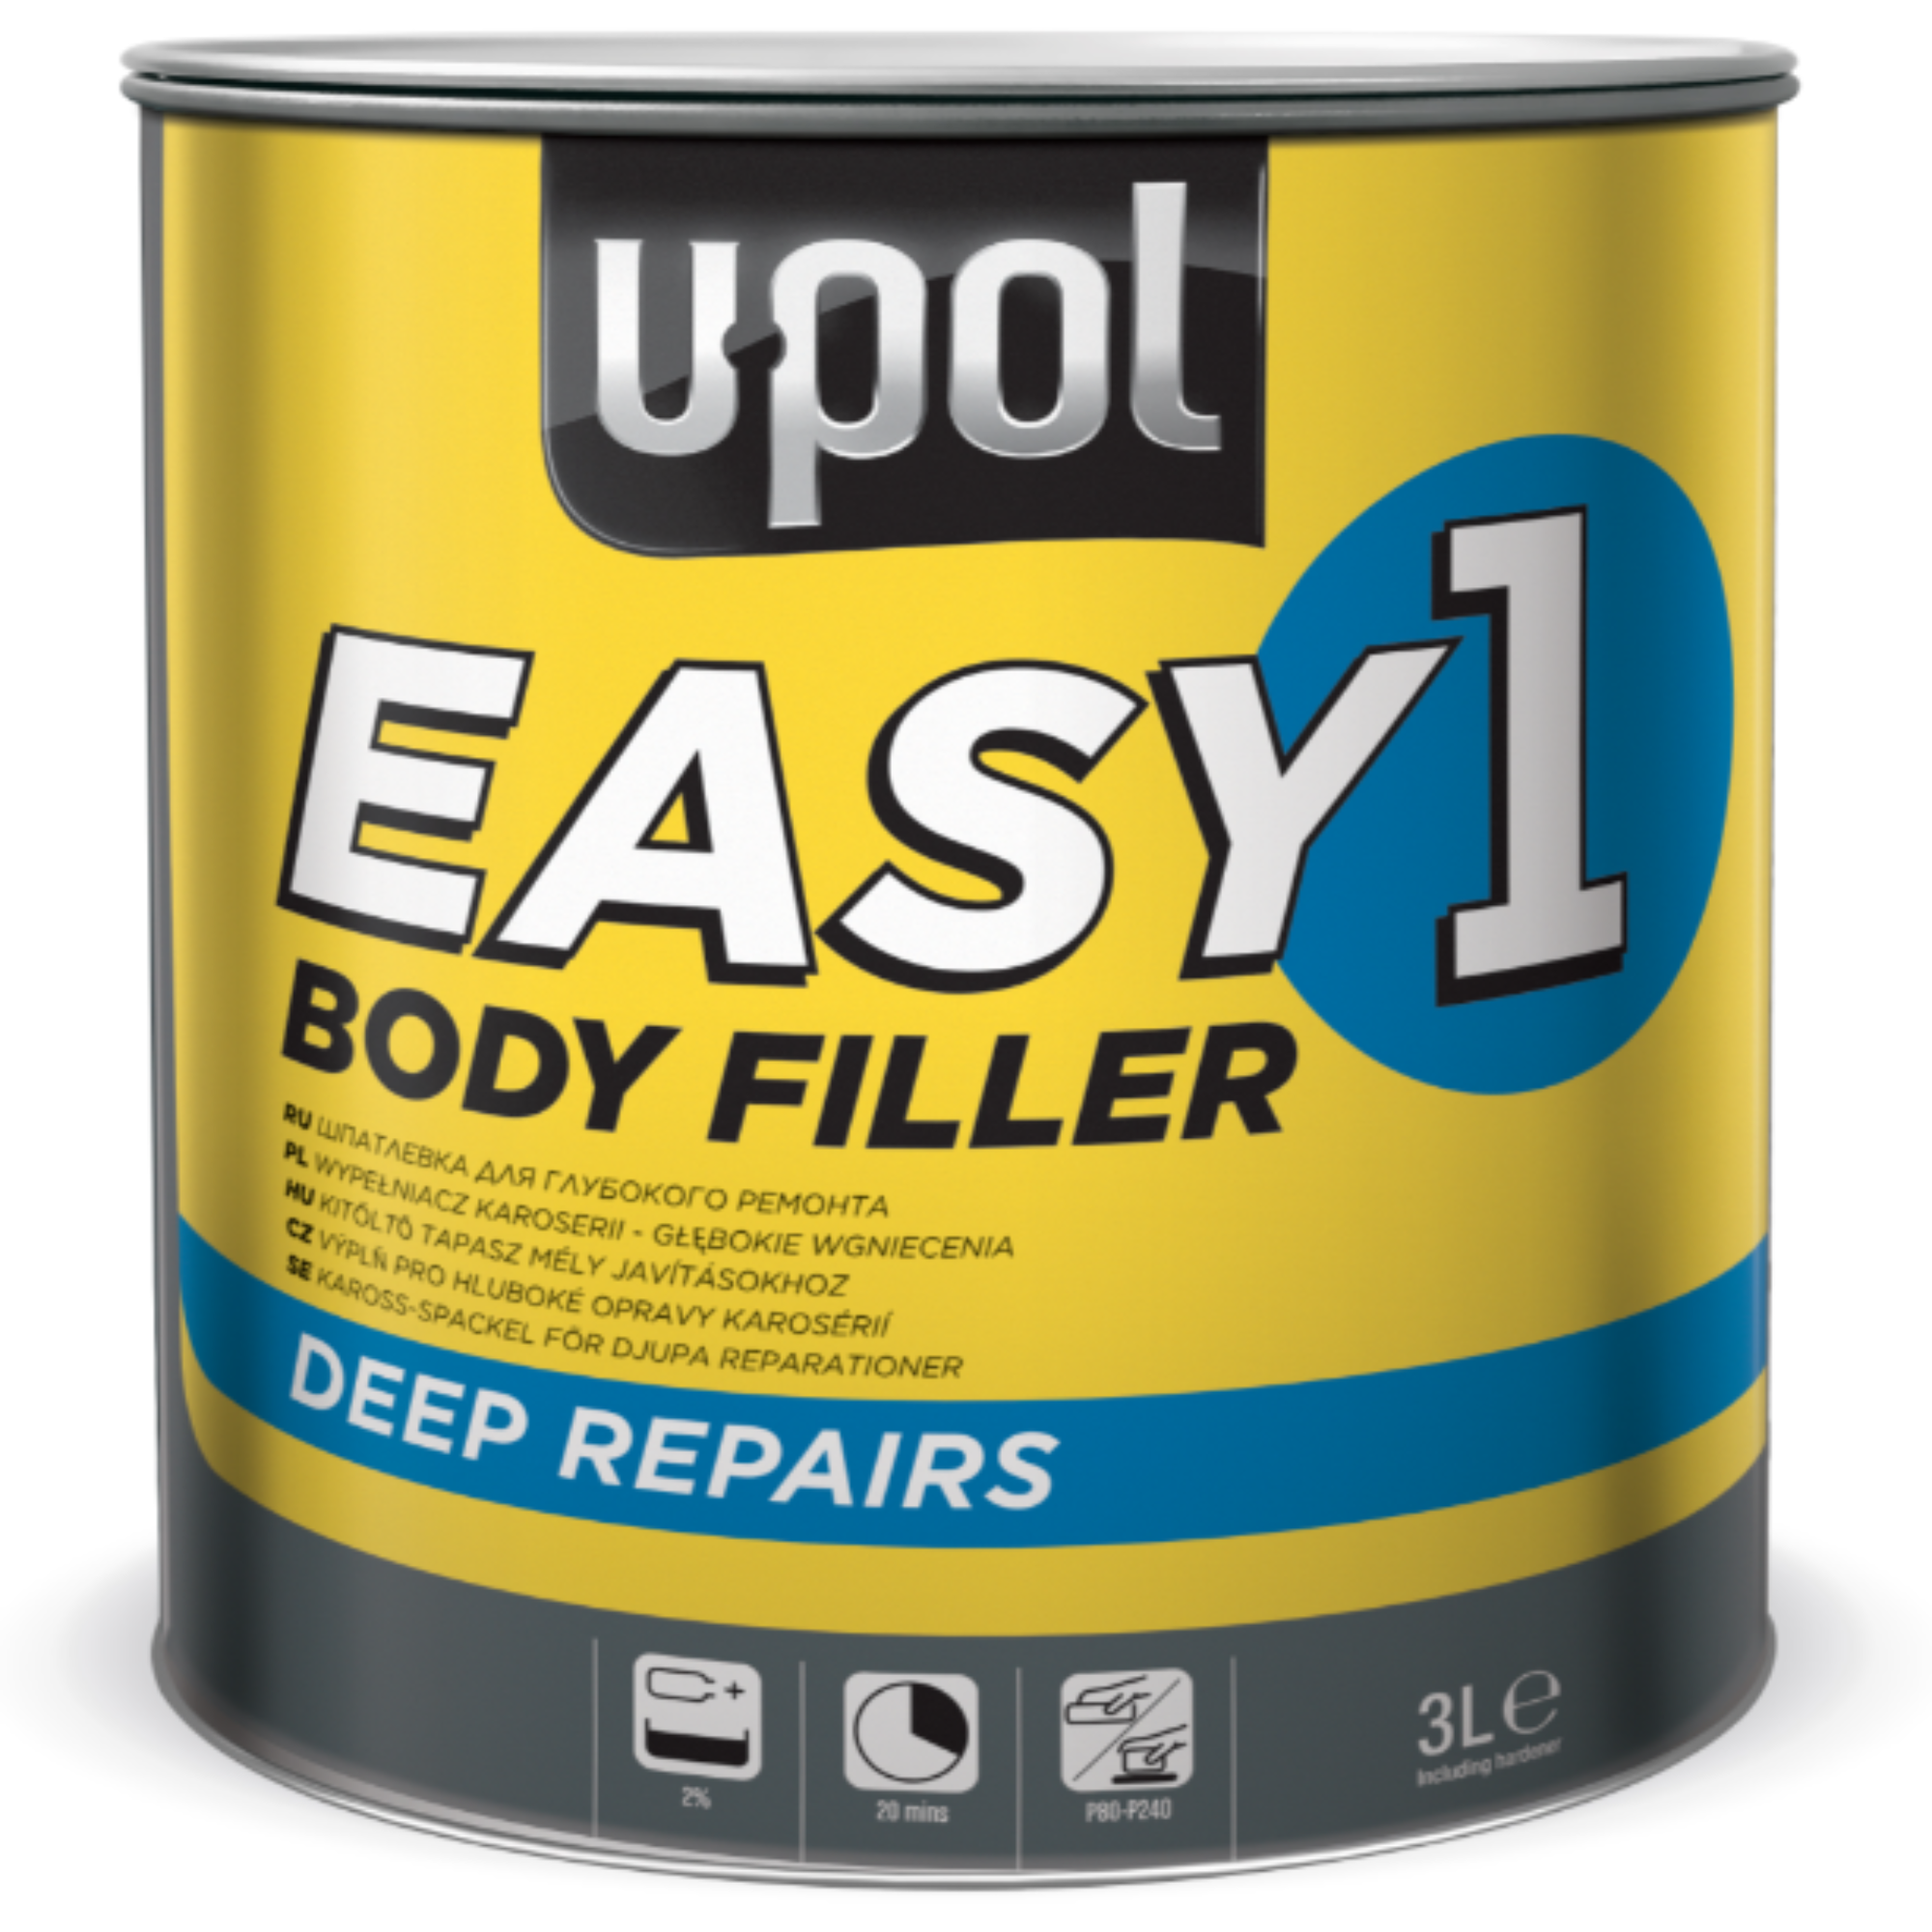 Upol Easy 1 Body Filler 3L